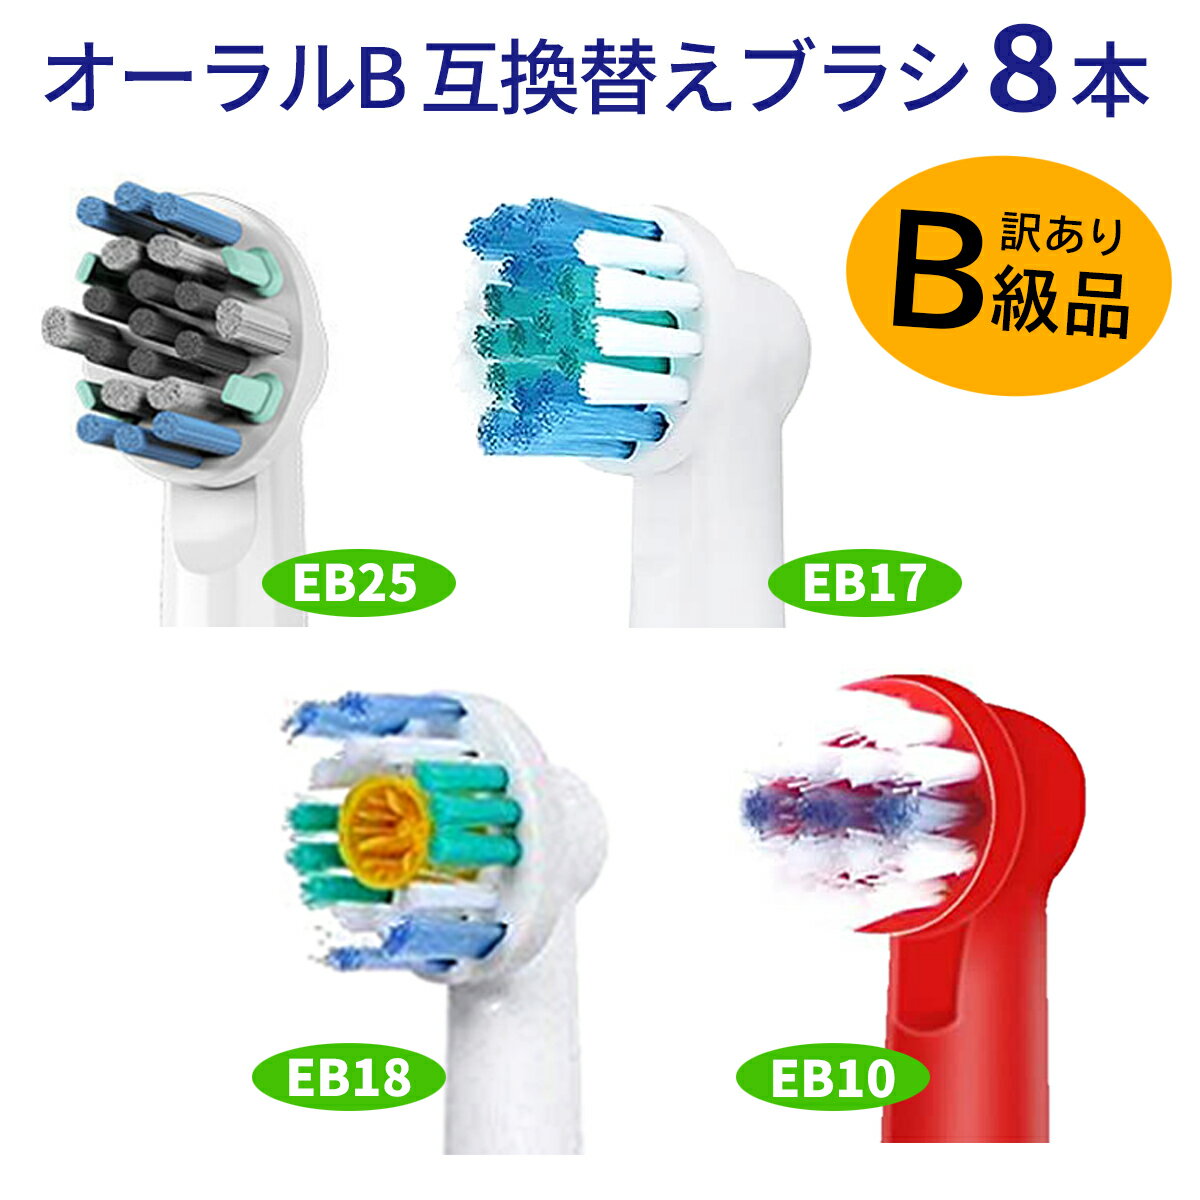 電動歯ブラシ 替えブラシ ブラウン Braun オーラルB 互換品 互換ブラシ EB10 EB18 EB25 EB17 8本セット 